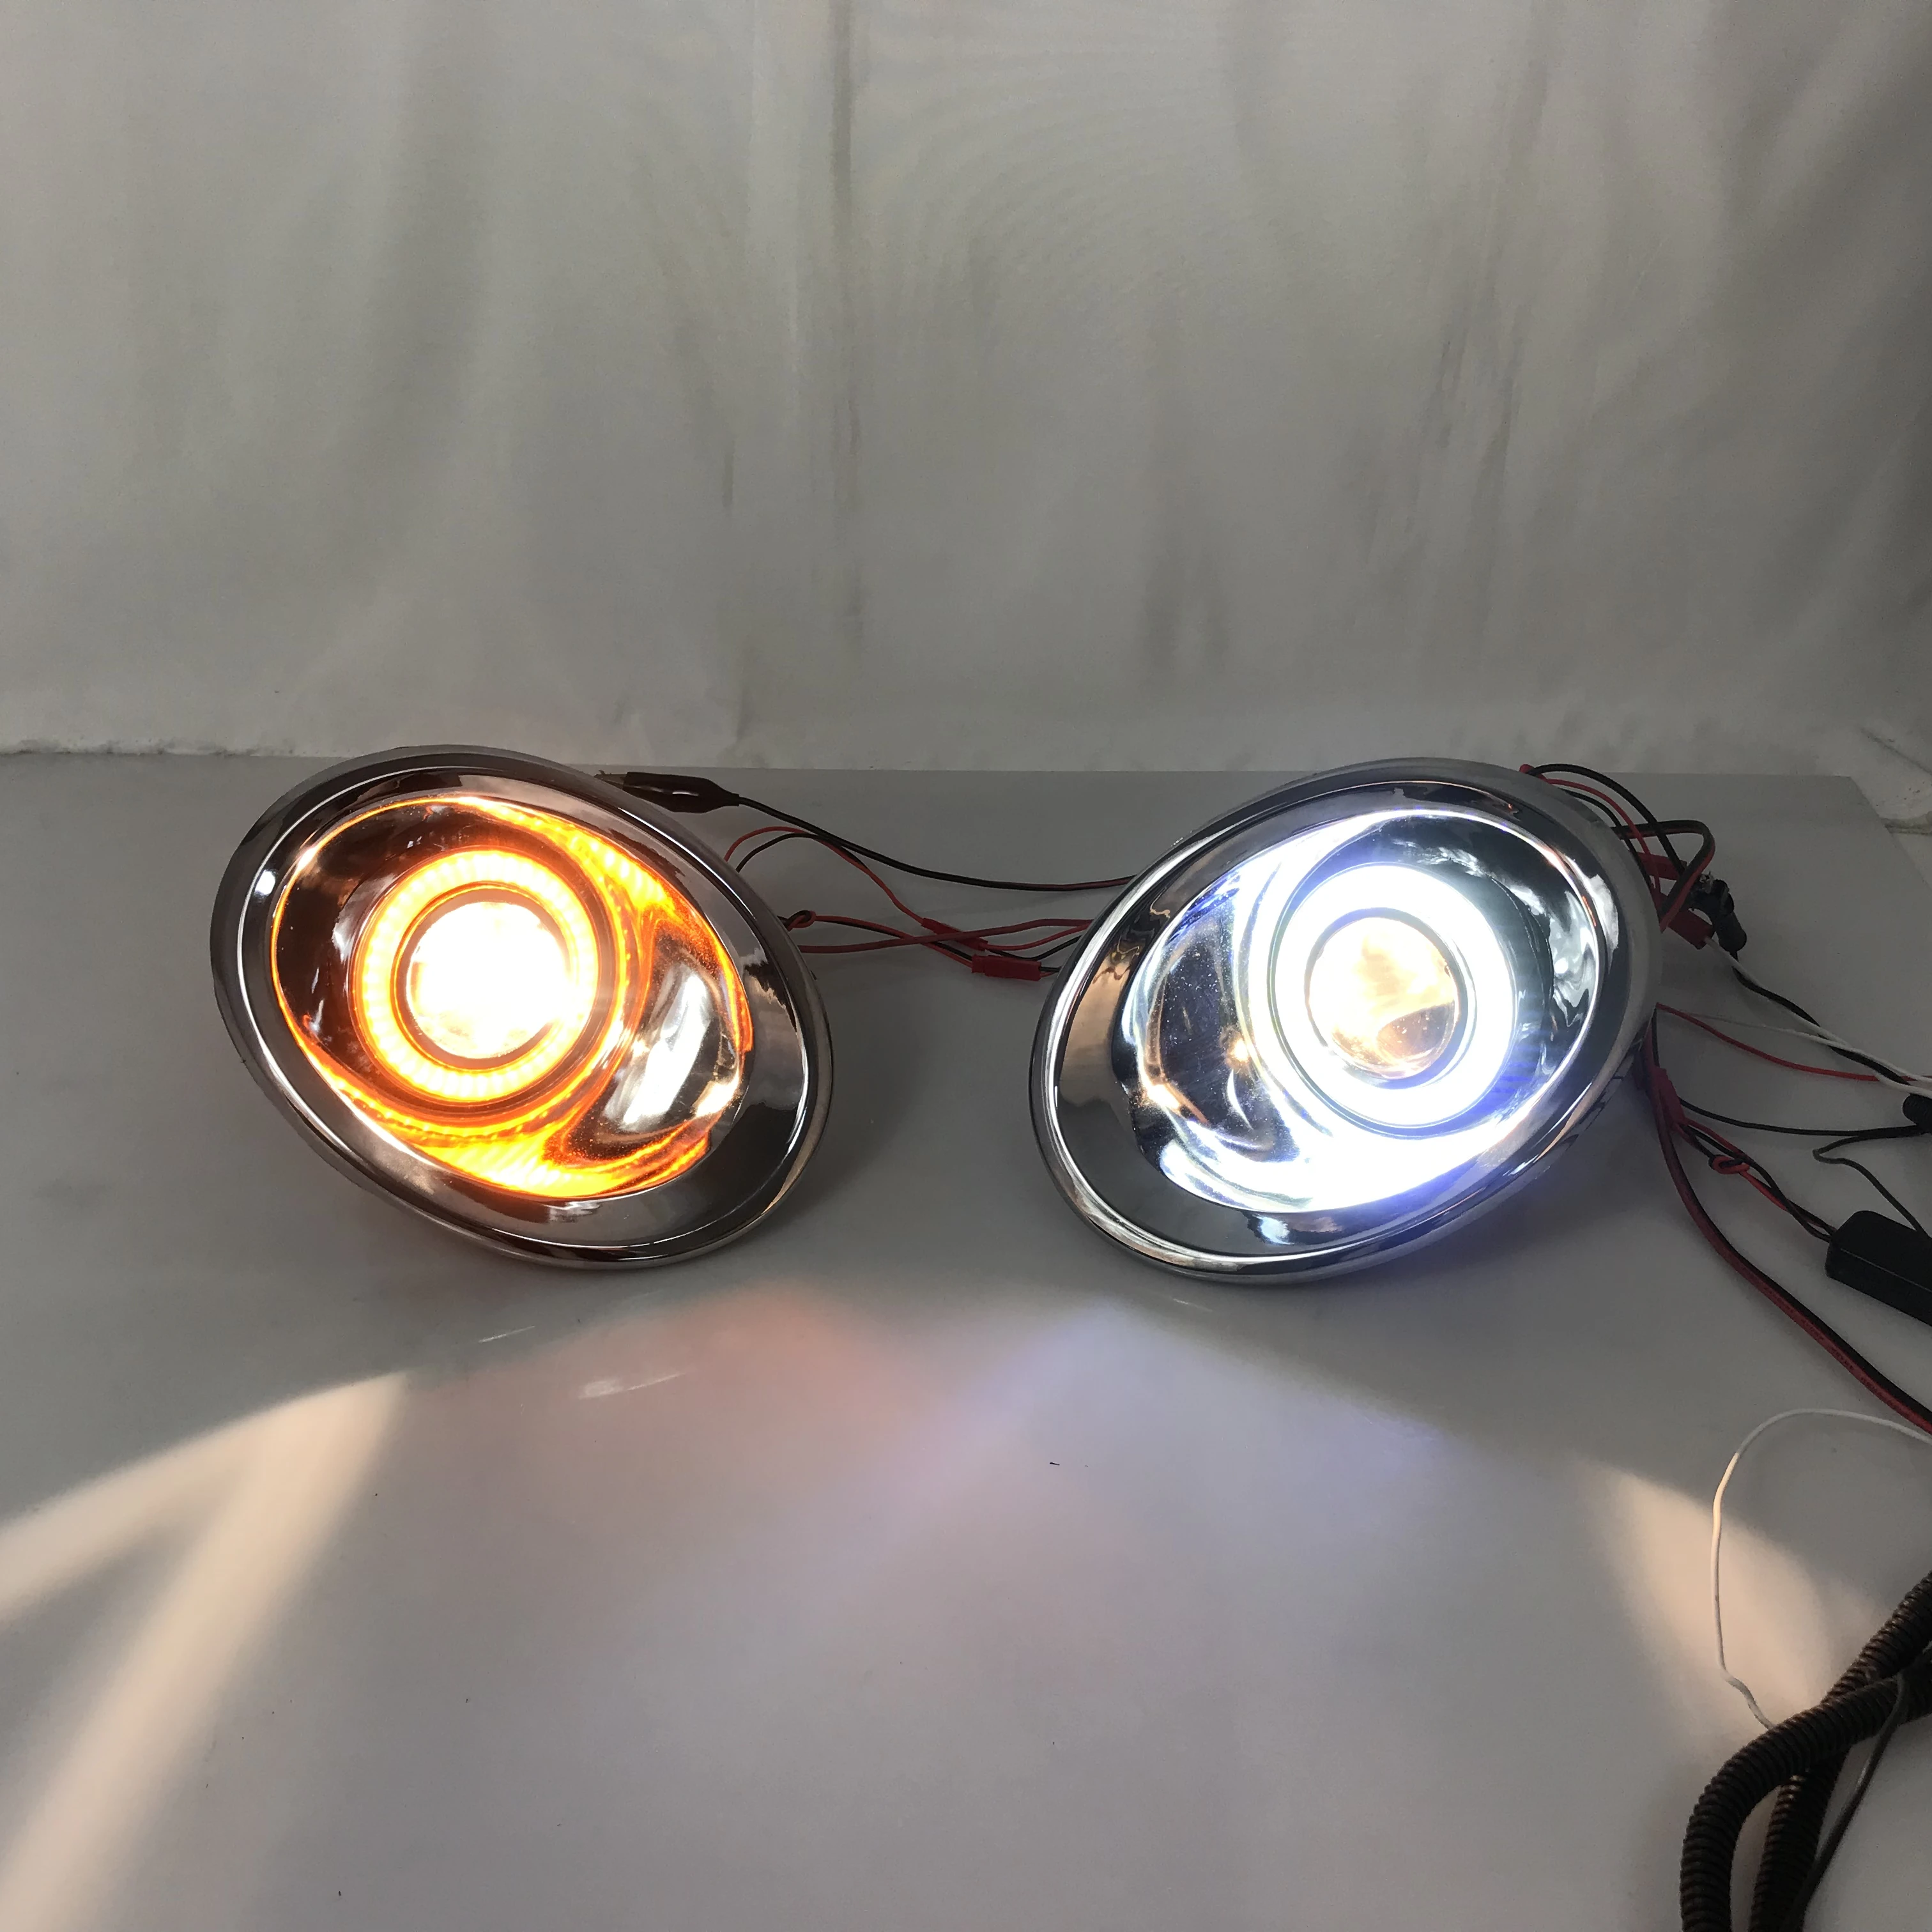 

RQXR fog lamp driving light assembly For Nissan nv200 cob angel eye led daytime running lights turn signal